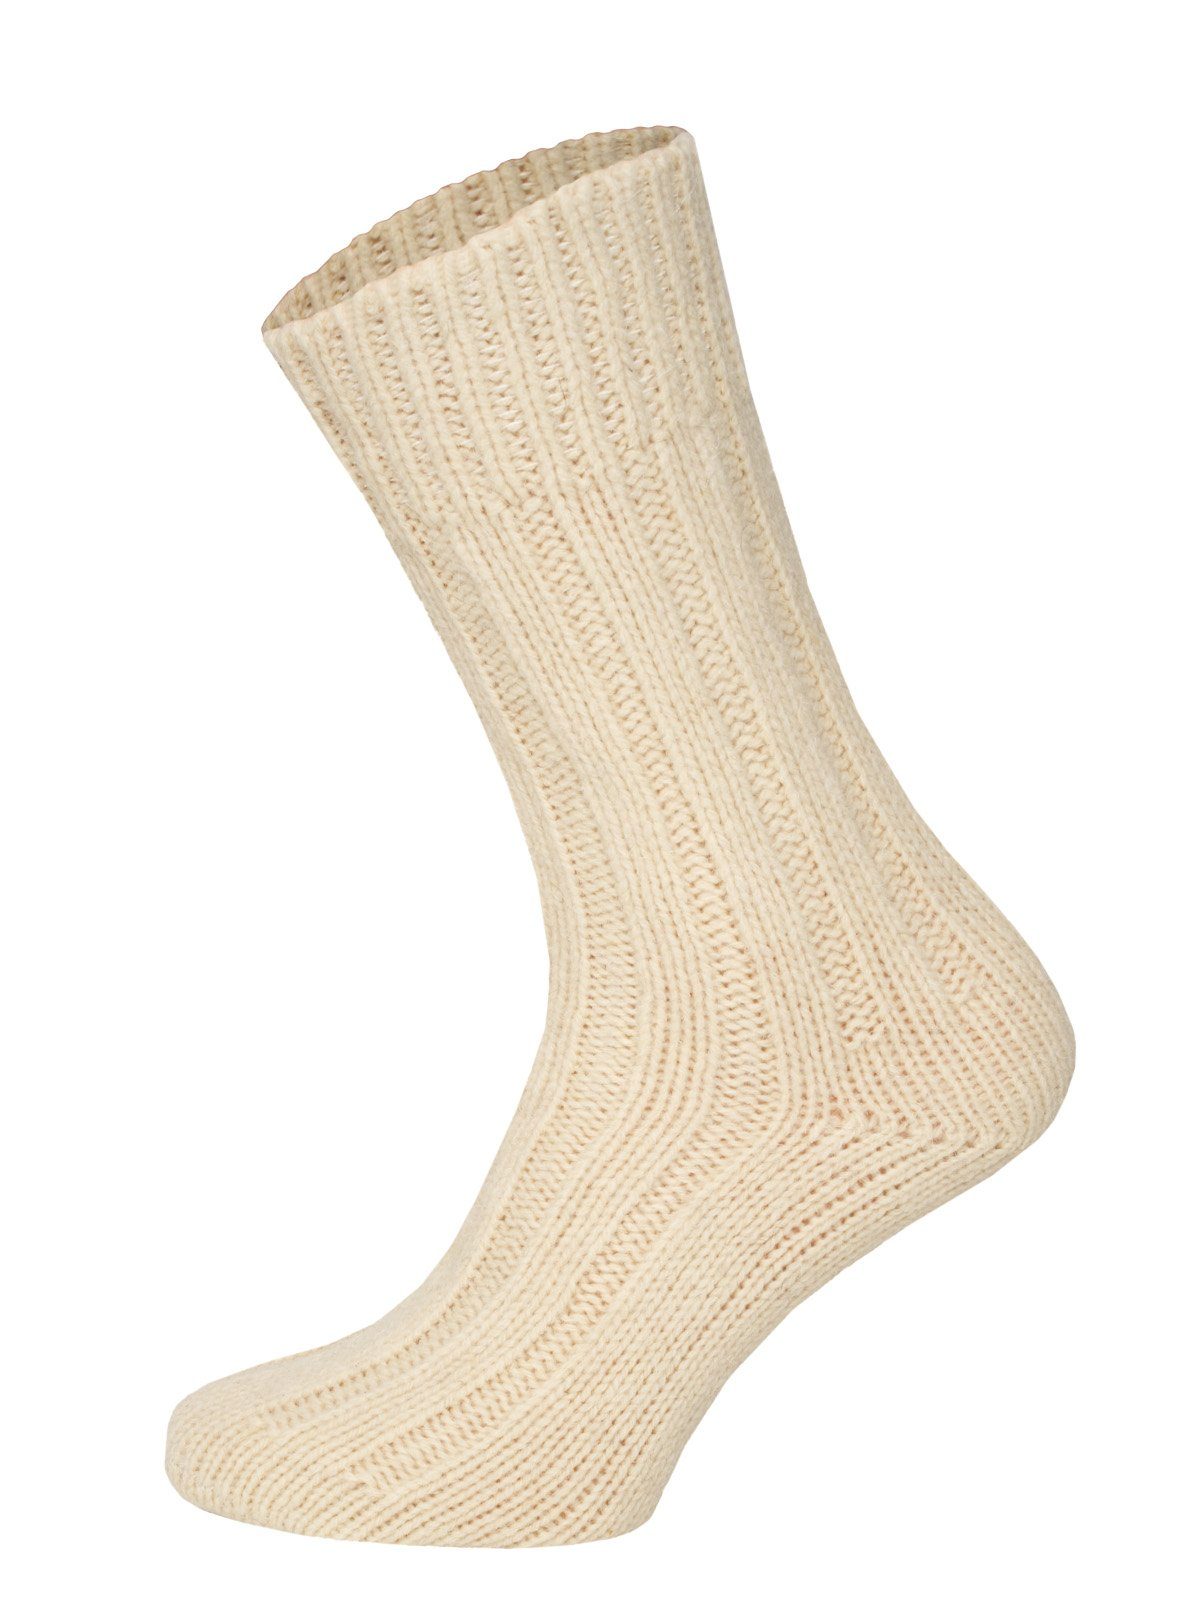 HomeOfSocks Socken Wollsocken aus 100% Wolle (Schurwolle) 2er Pack Dicke und warme Wollsocken mit 100% Wollanteil Wollweiß